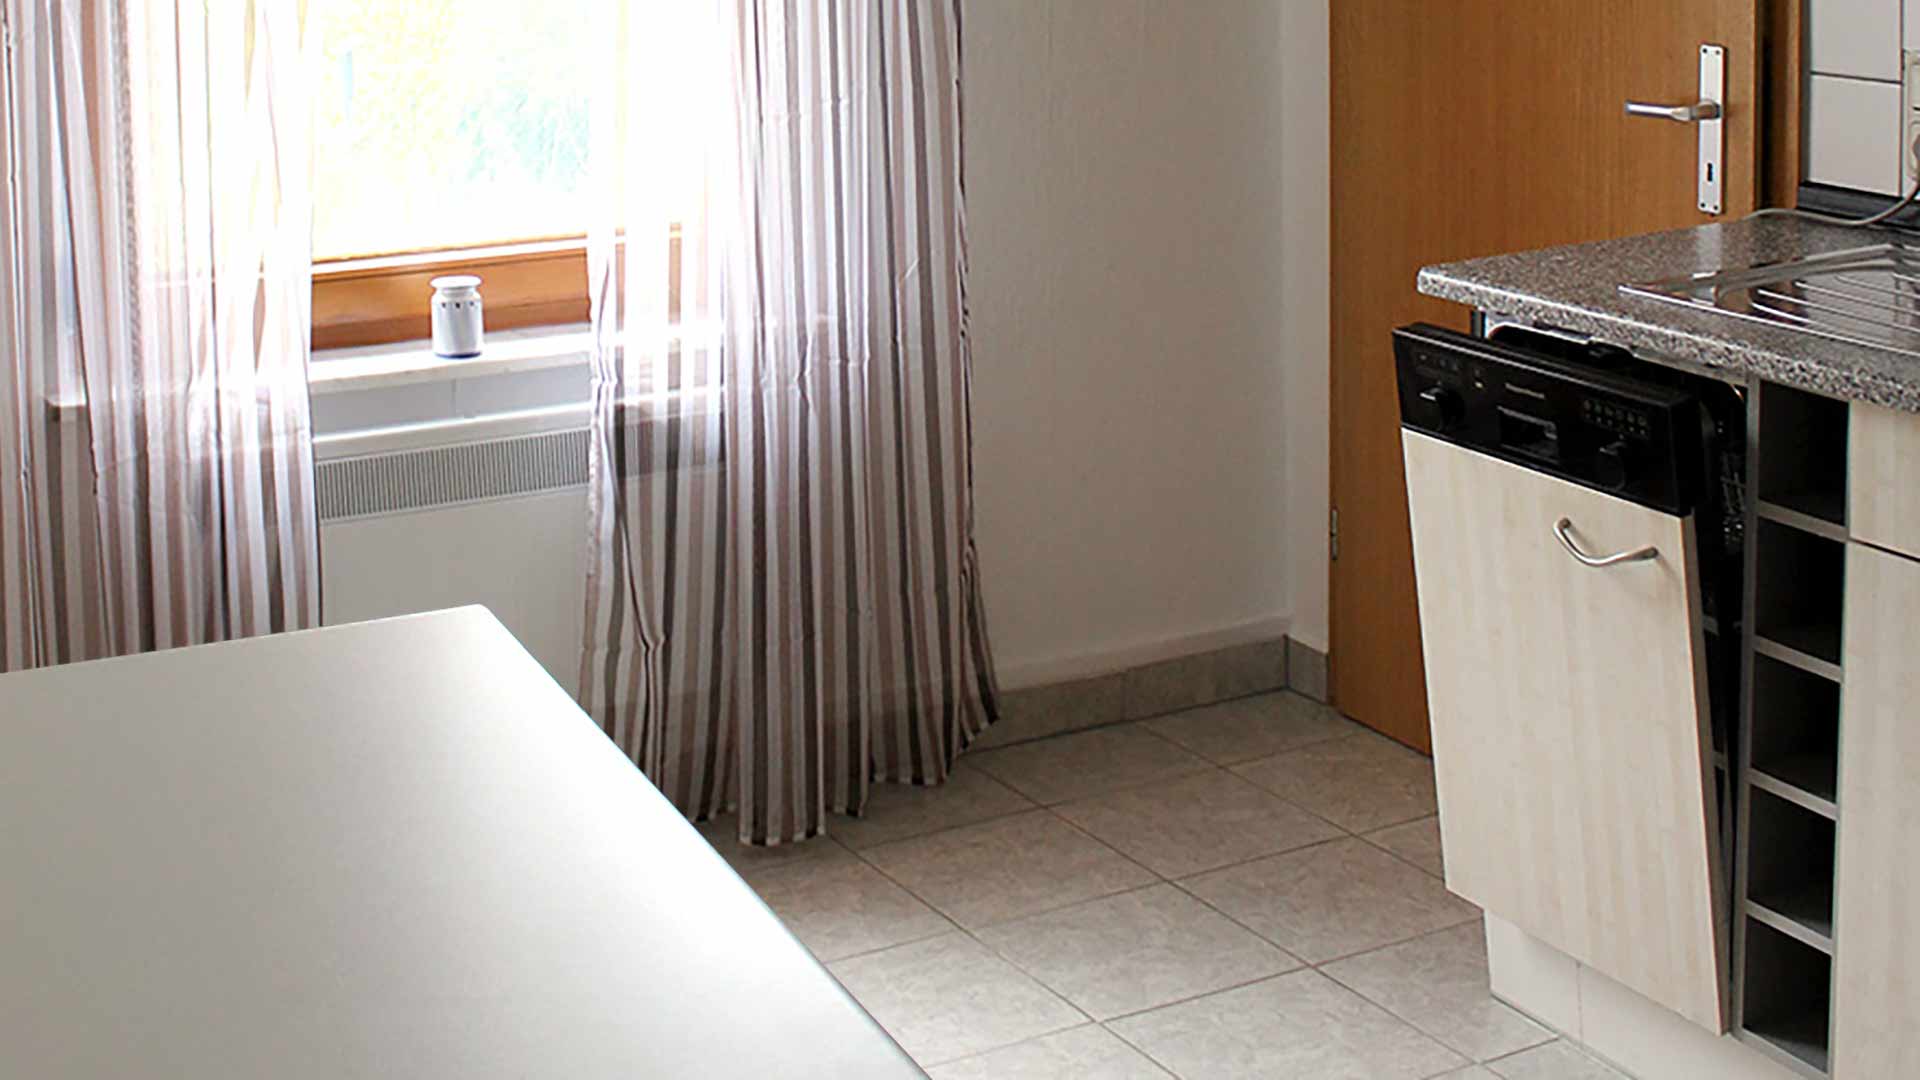 Küche mit Spülmaschine im Erdgeschoss